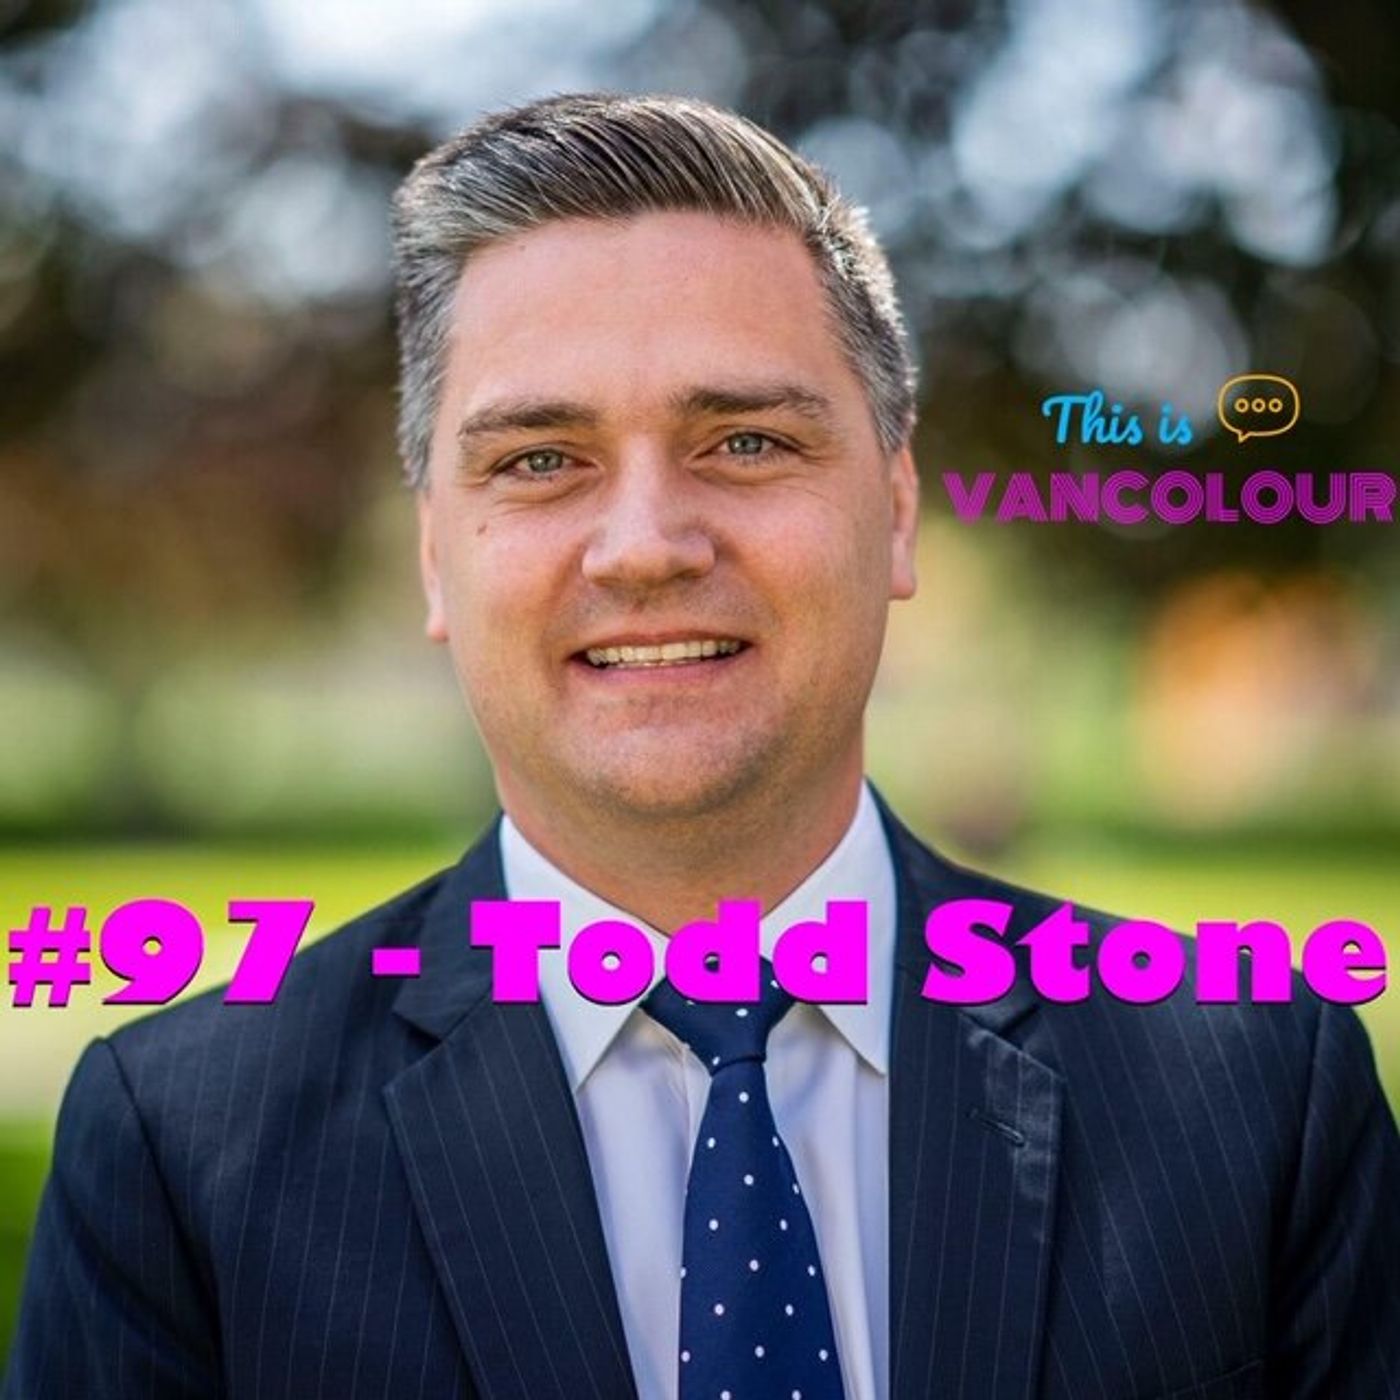 #97 - Todd Stone (BC Liberals)